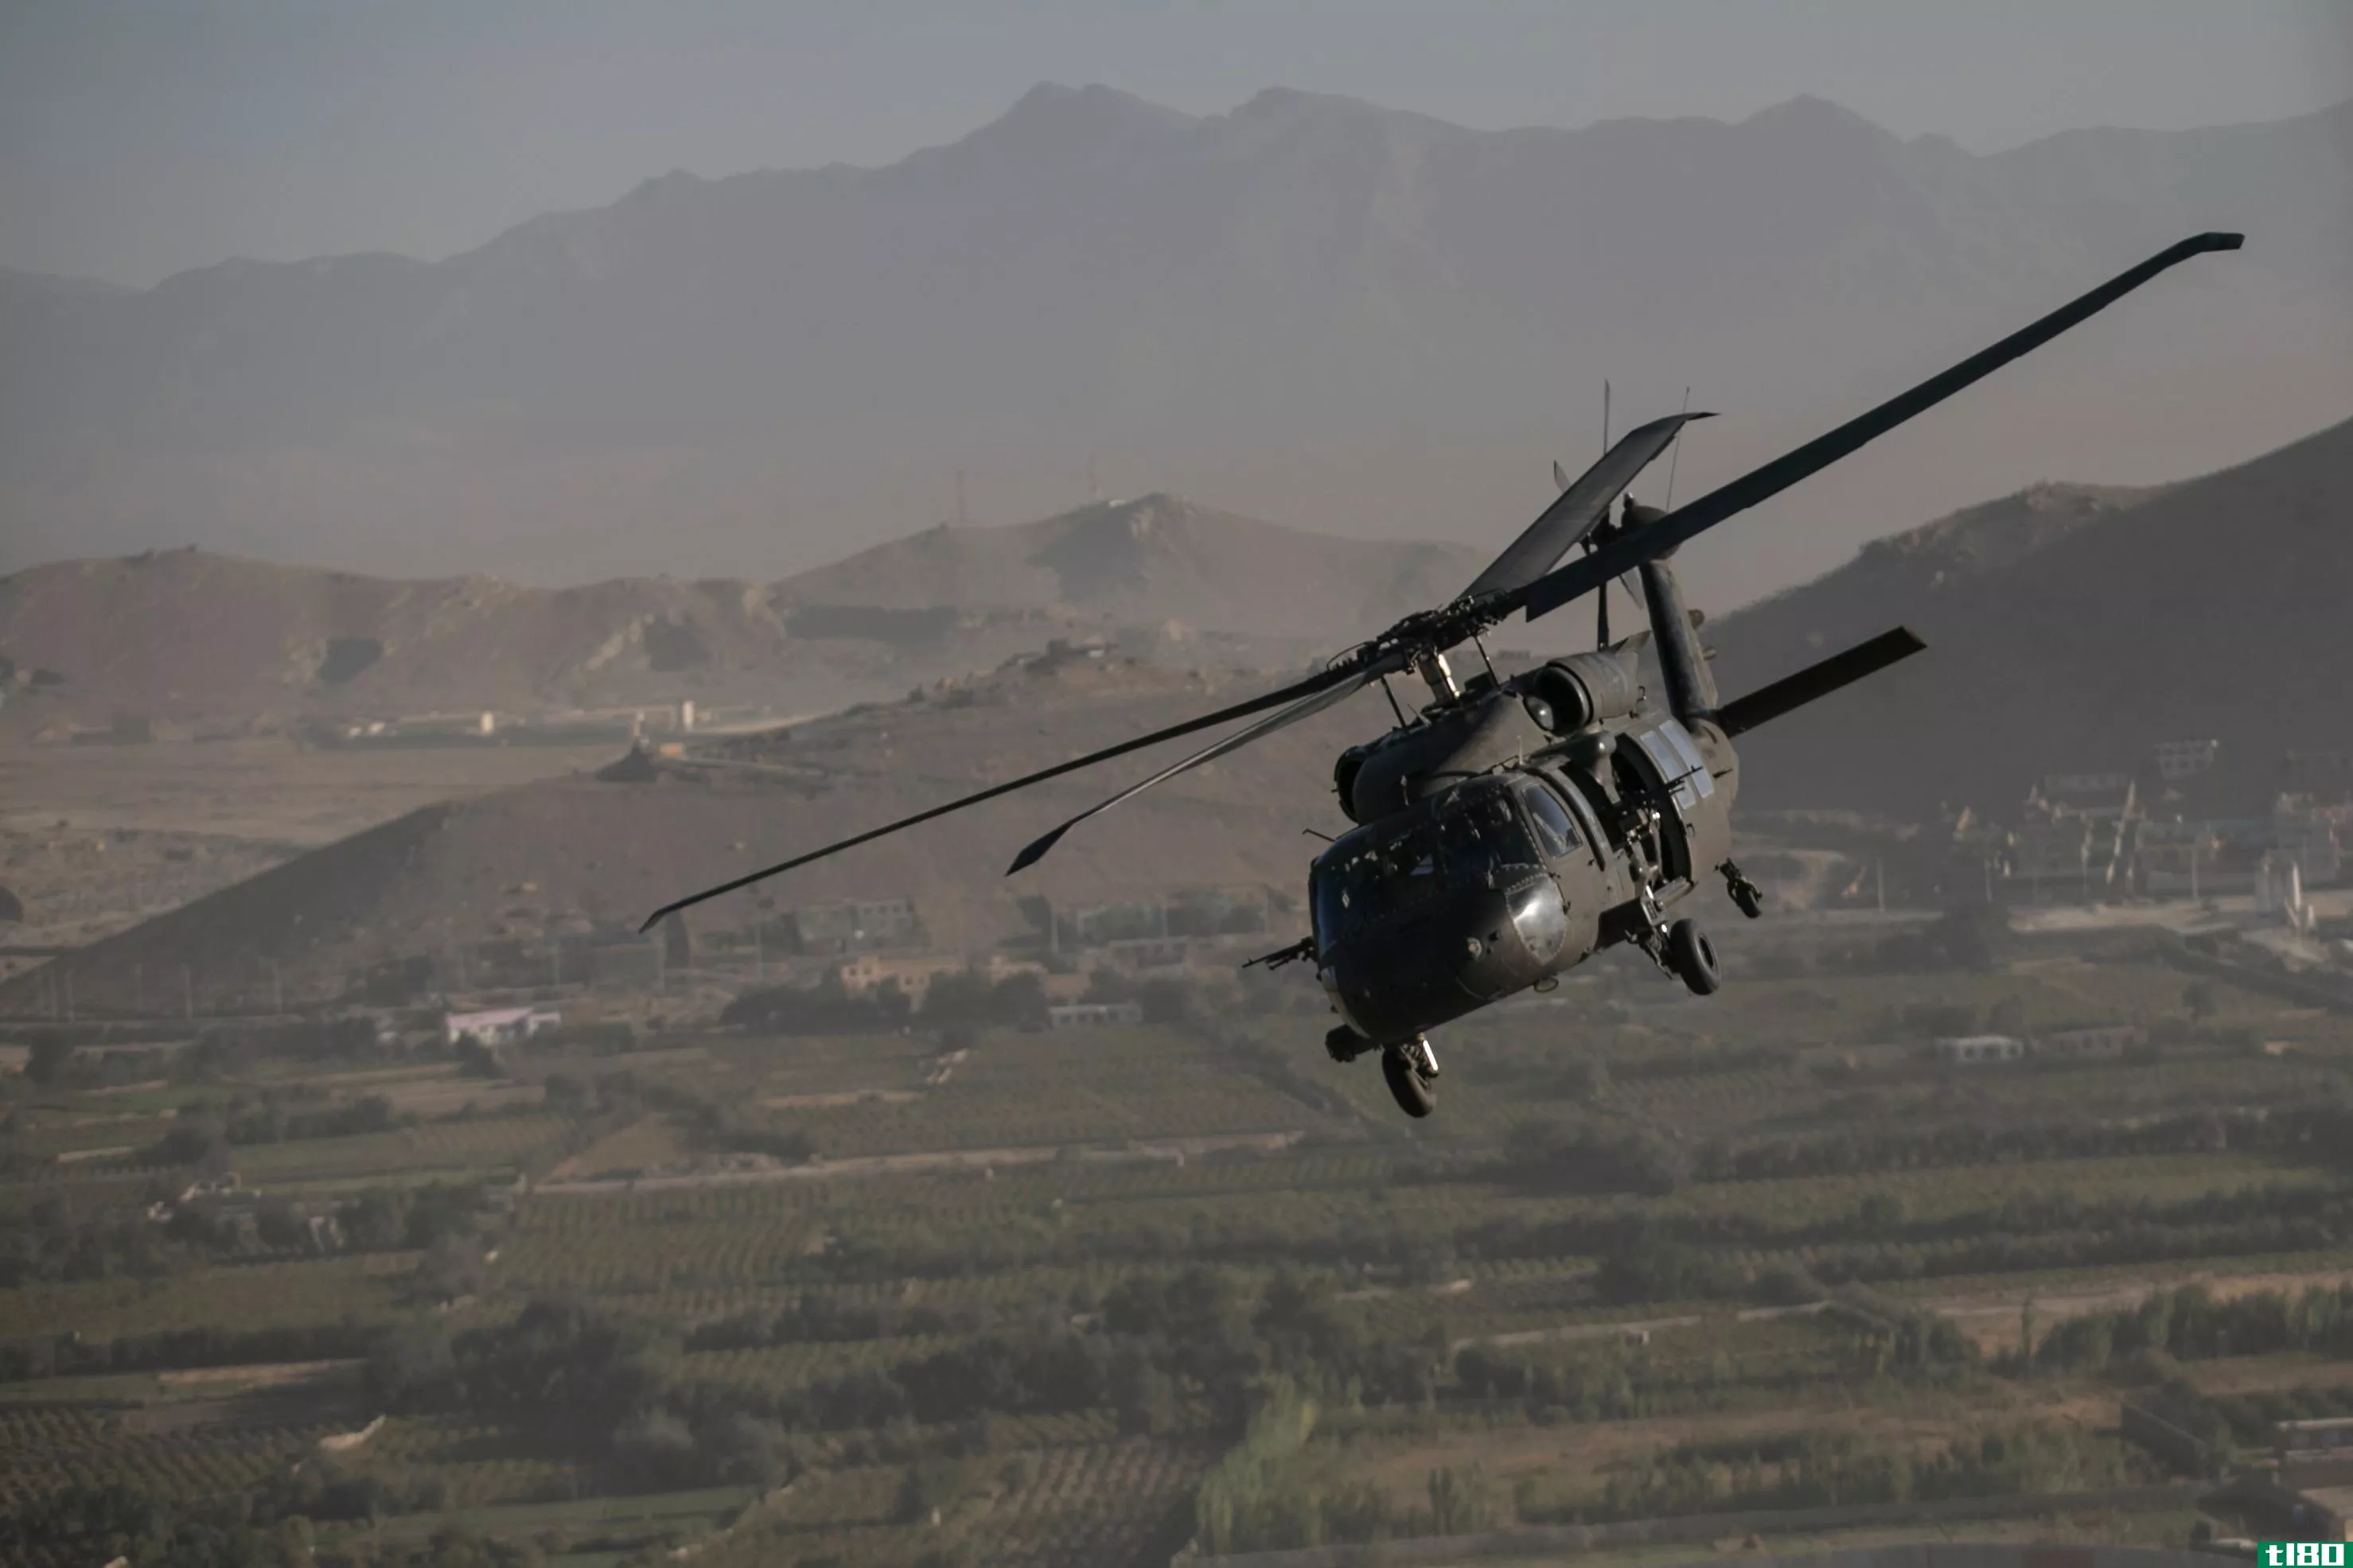 洛克希德马丁公司以90亿美元收购黑鹰直升机制造商西科斯基公司